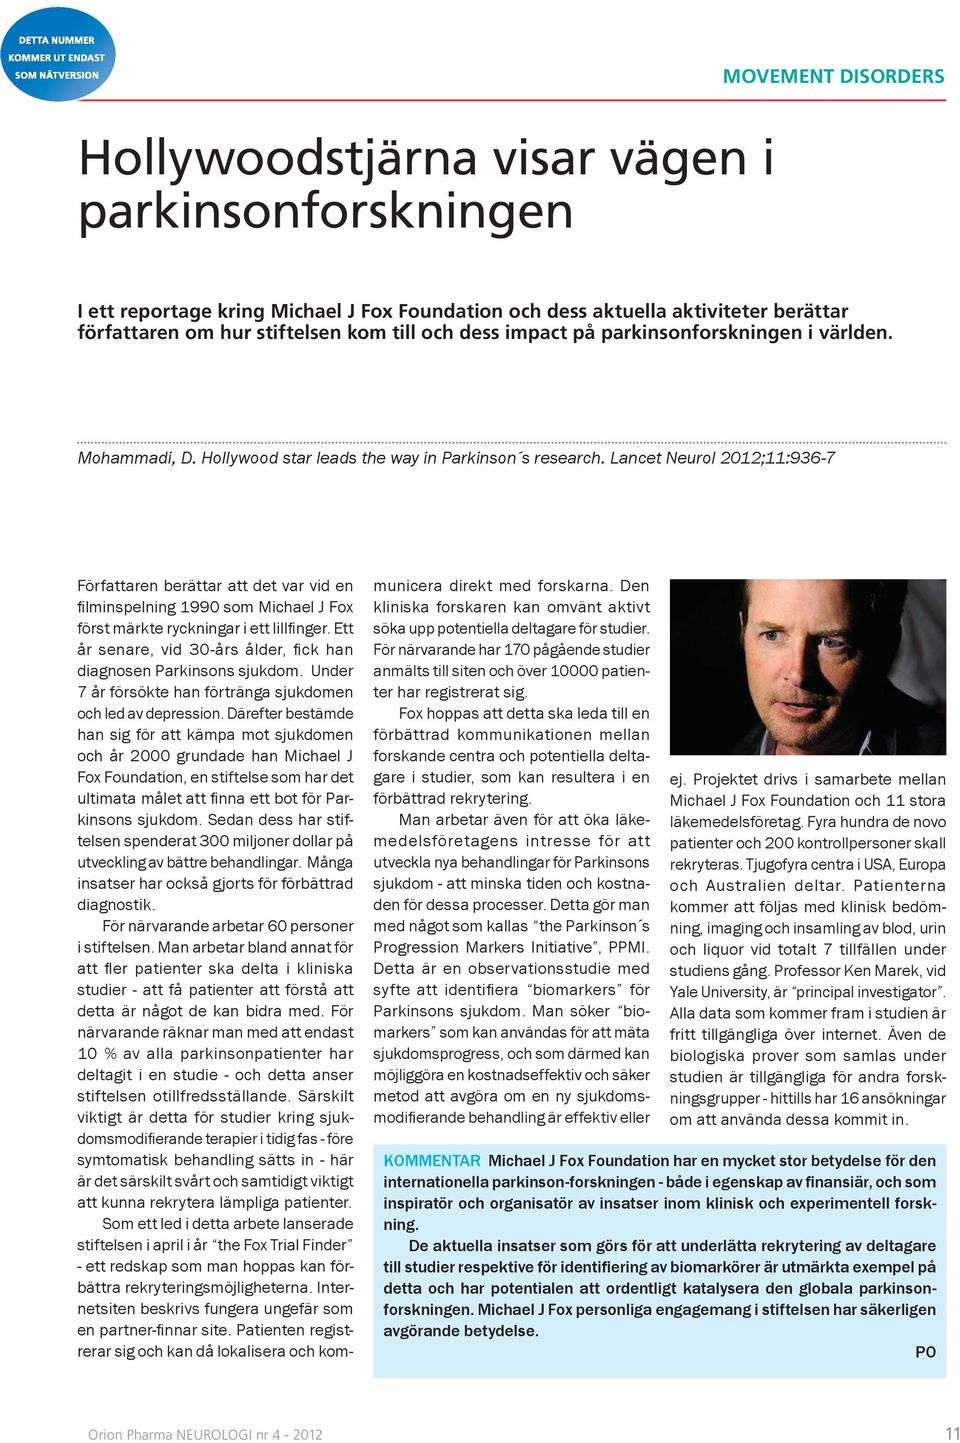 Lancet Neurol 2012;11:936-7 Författaren berättar att det var vid en fi lminspelning 1990 som Michael J Fox först märkte ryckningar i ett lillfi nger.